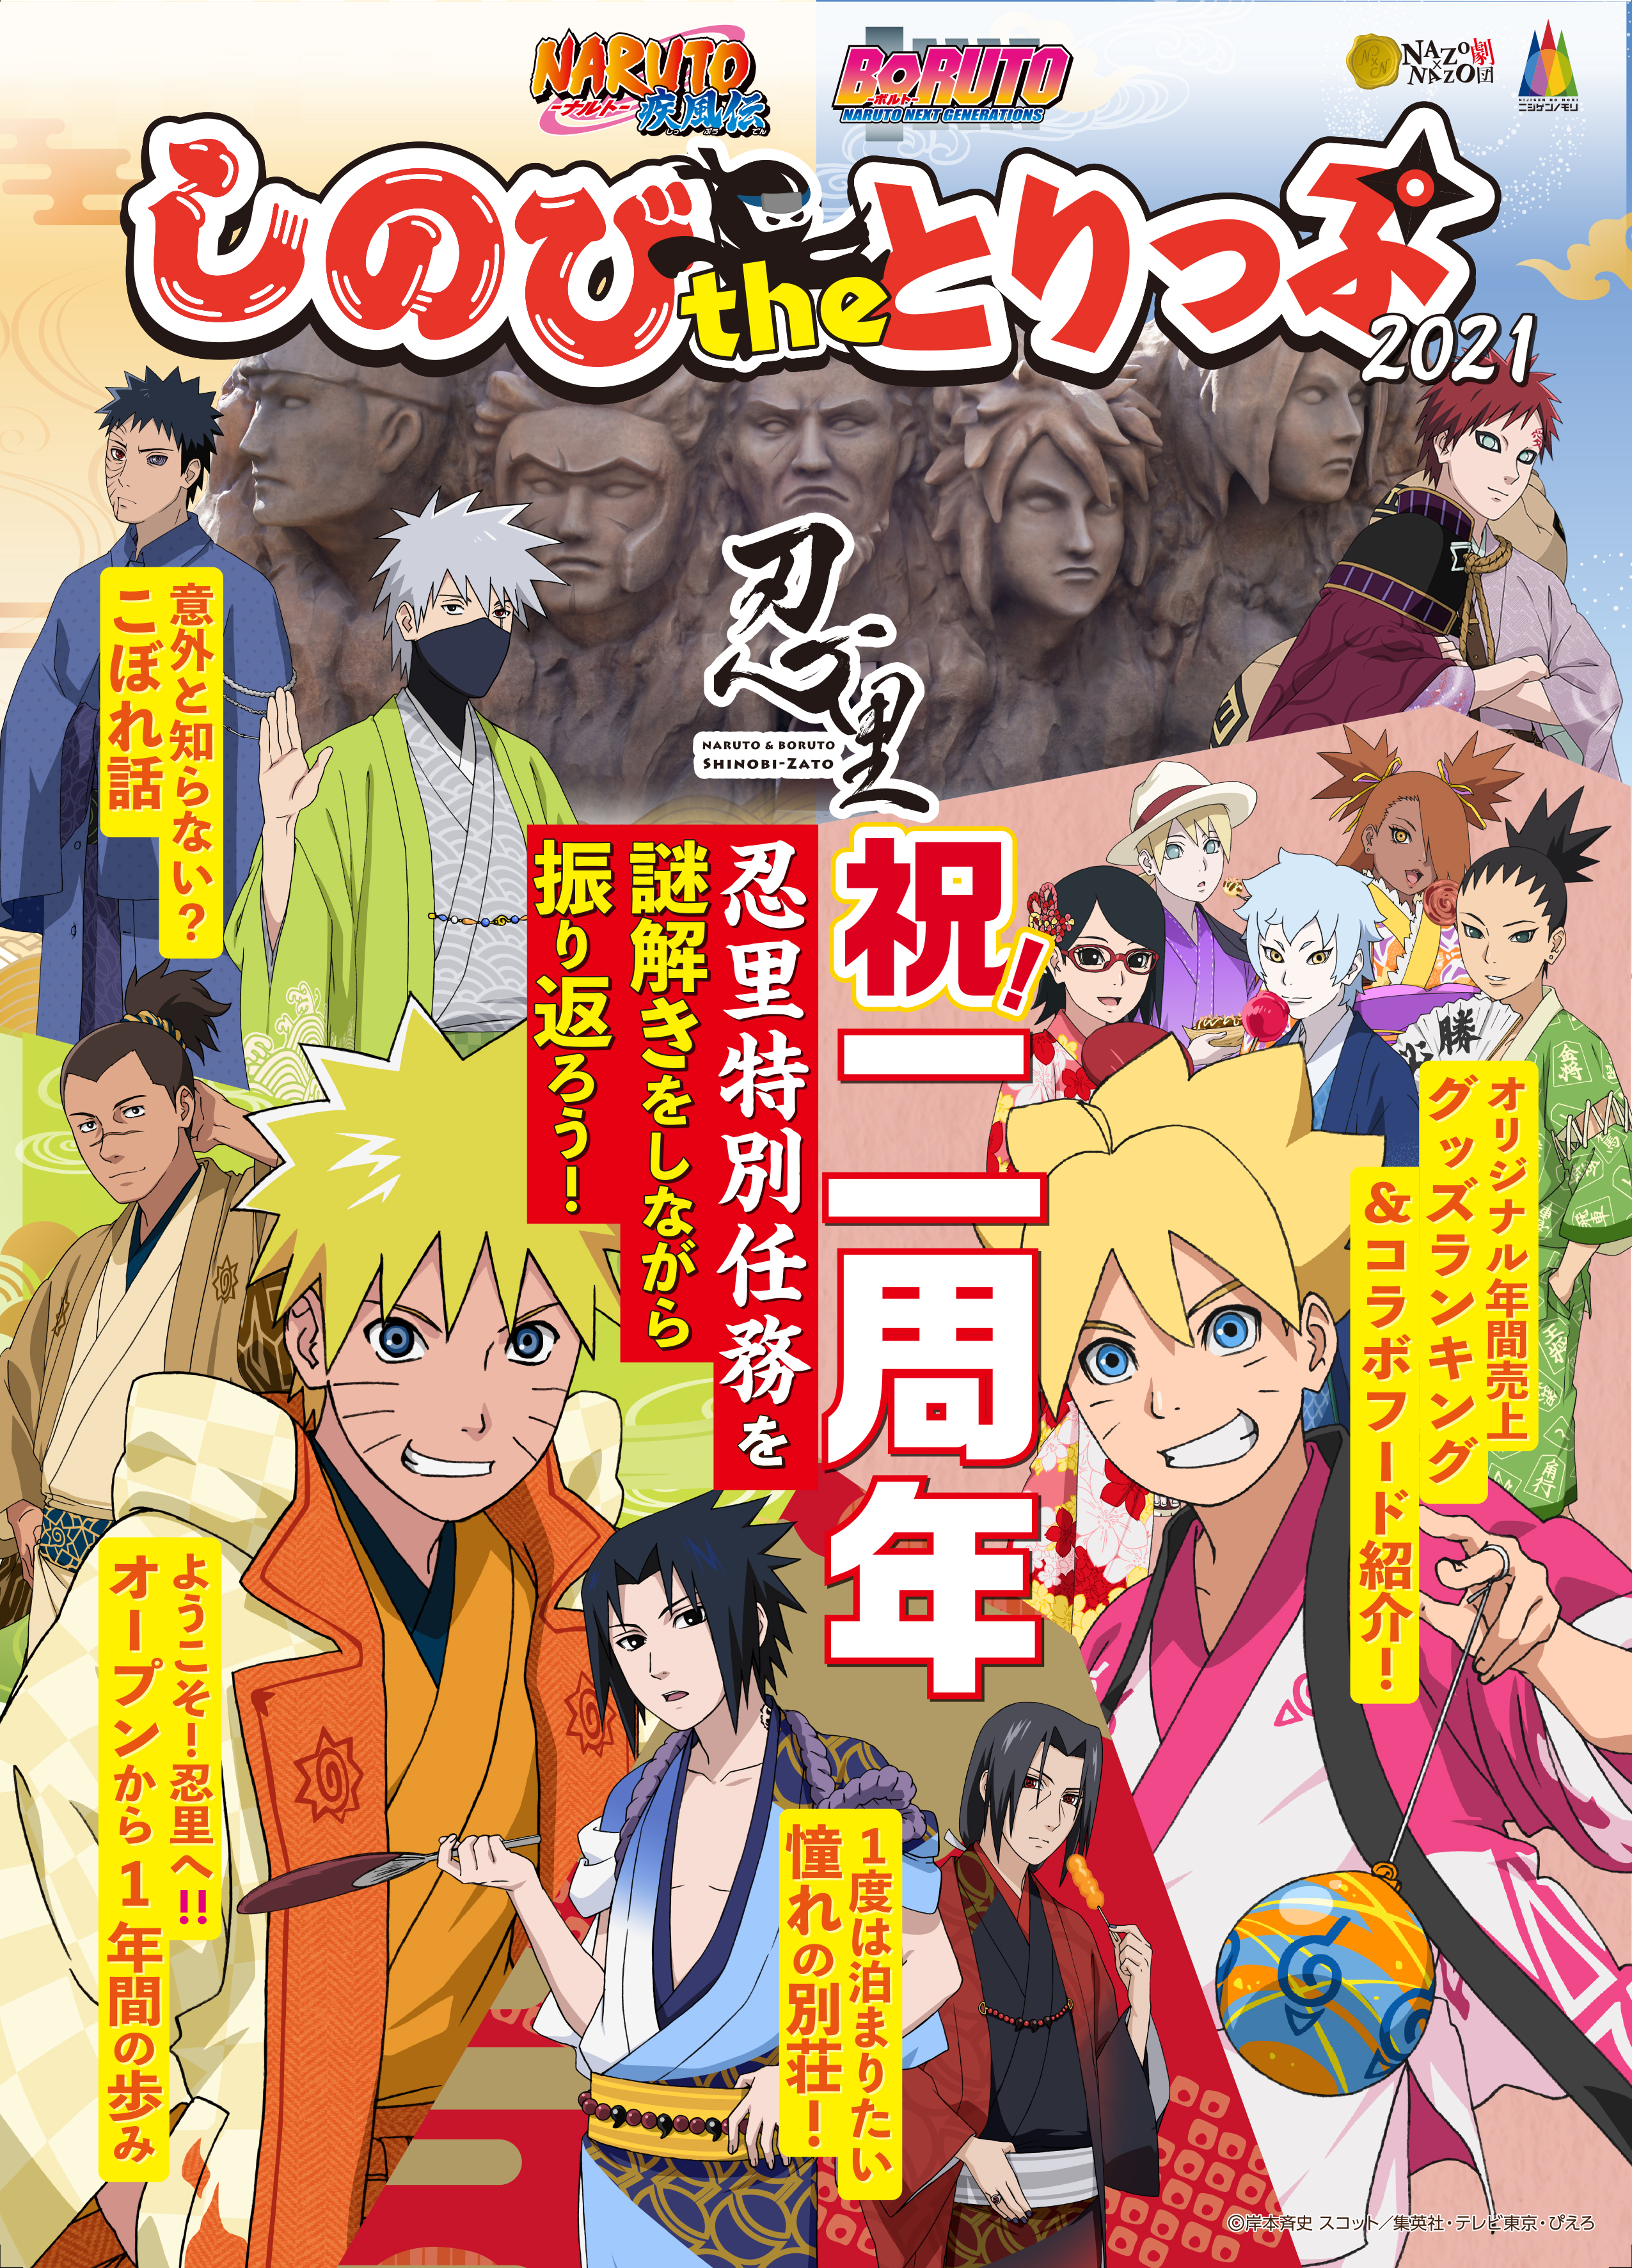 ニジゲンノモリ Naruto Boruto 忍里 オープン2周年を記念した限定チケットの販売やイベントを開催 Newscast